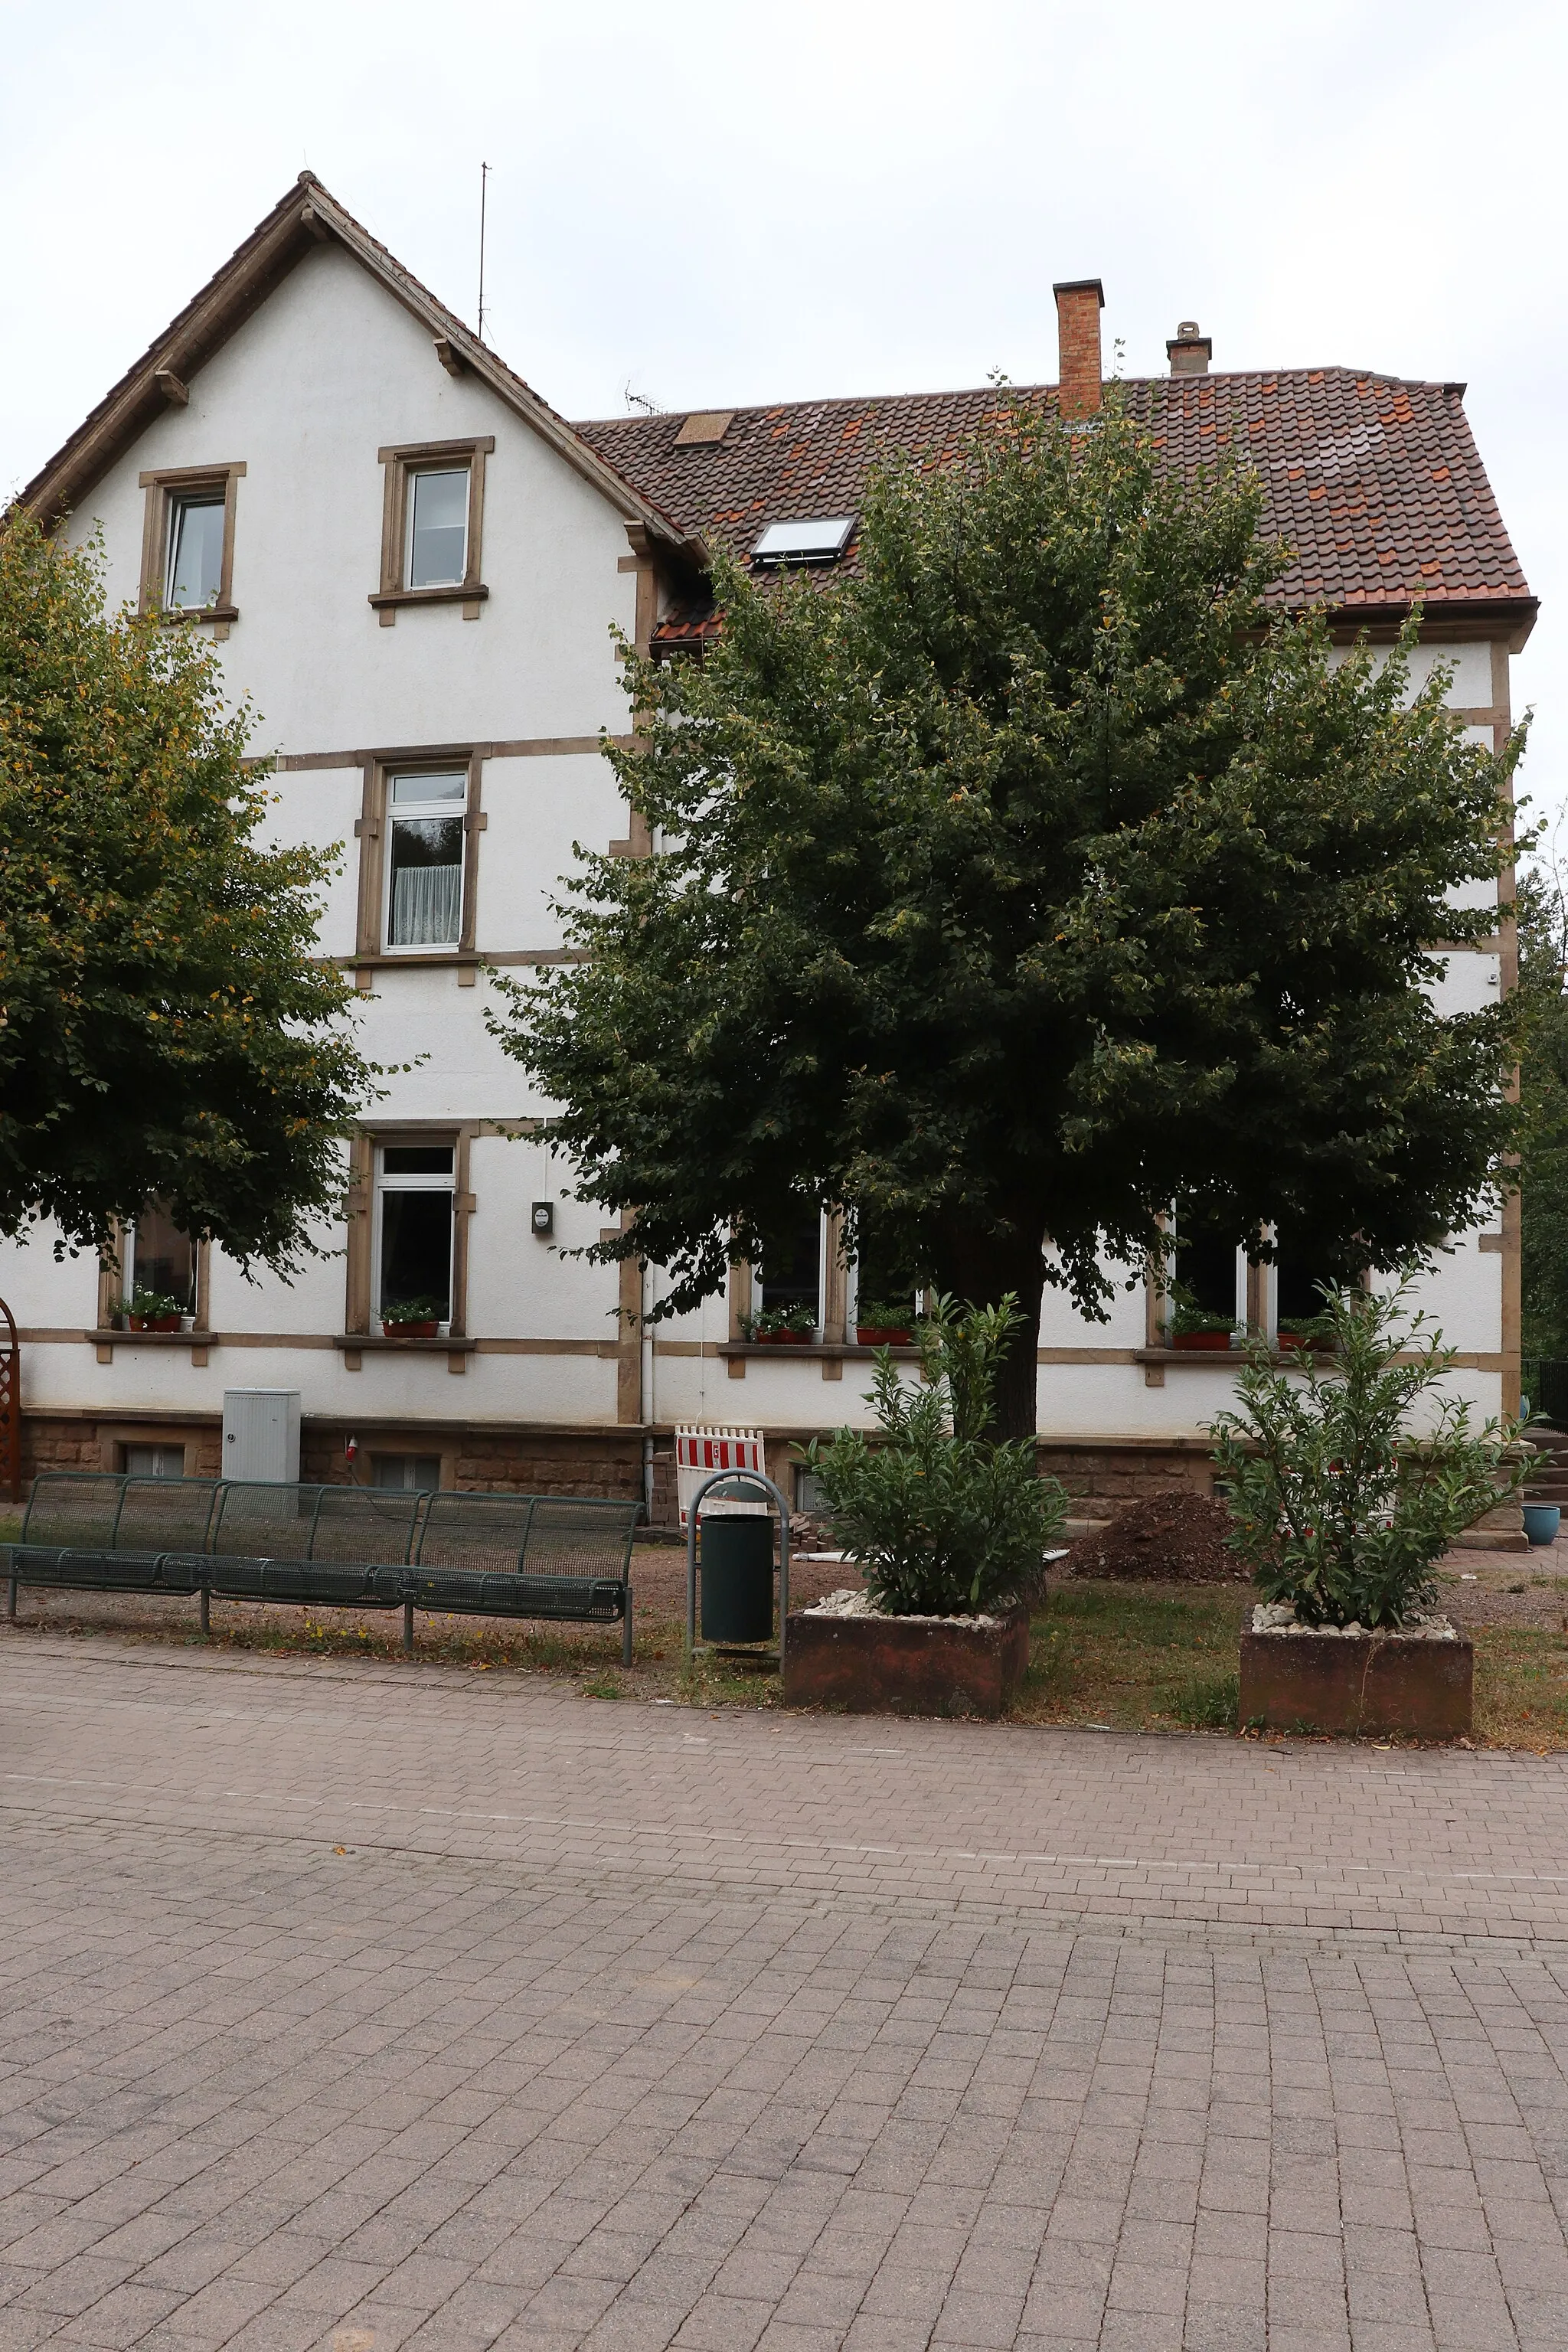 Photo showing: Former schoolhouse; now a restaurant
Alsenzstrasse 116 in Hochstein, Germany

1898-1900, architect Karl Ritter, Kaiserslautern